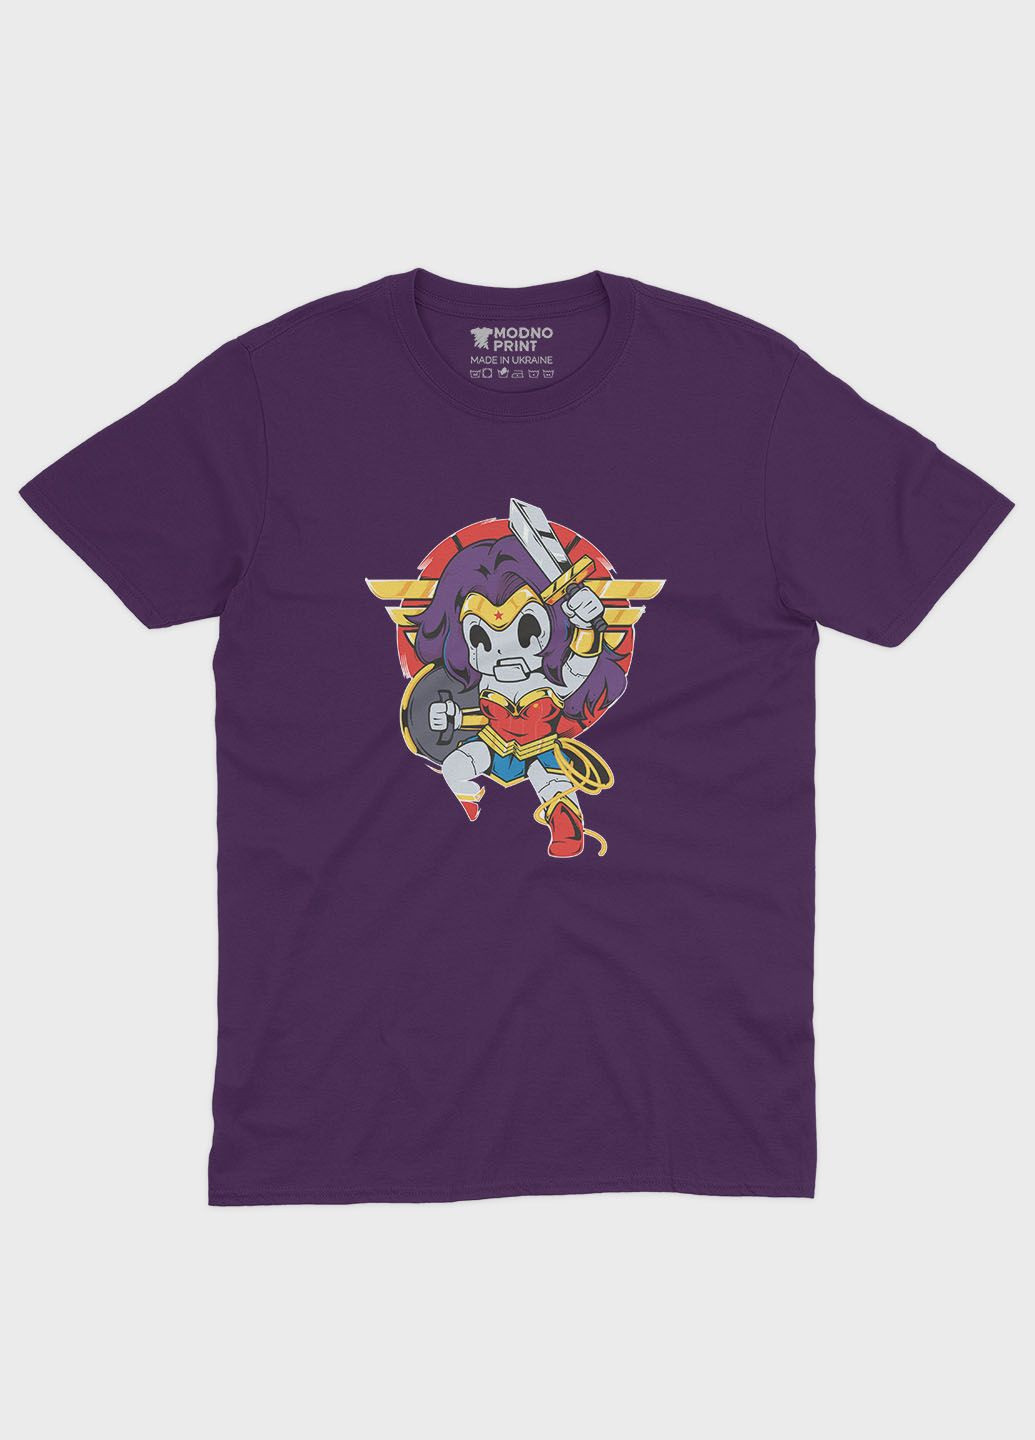 Фіолетова демісезонна футболка для дівчинки з принтом супергероя - диво-жінка (ts001-1-dby-006-006-006-g) Modno